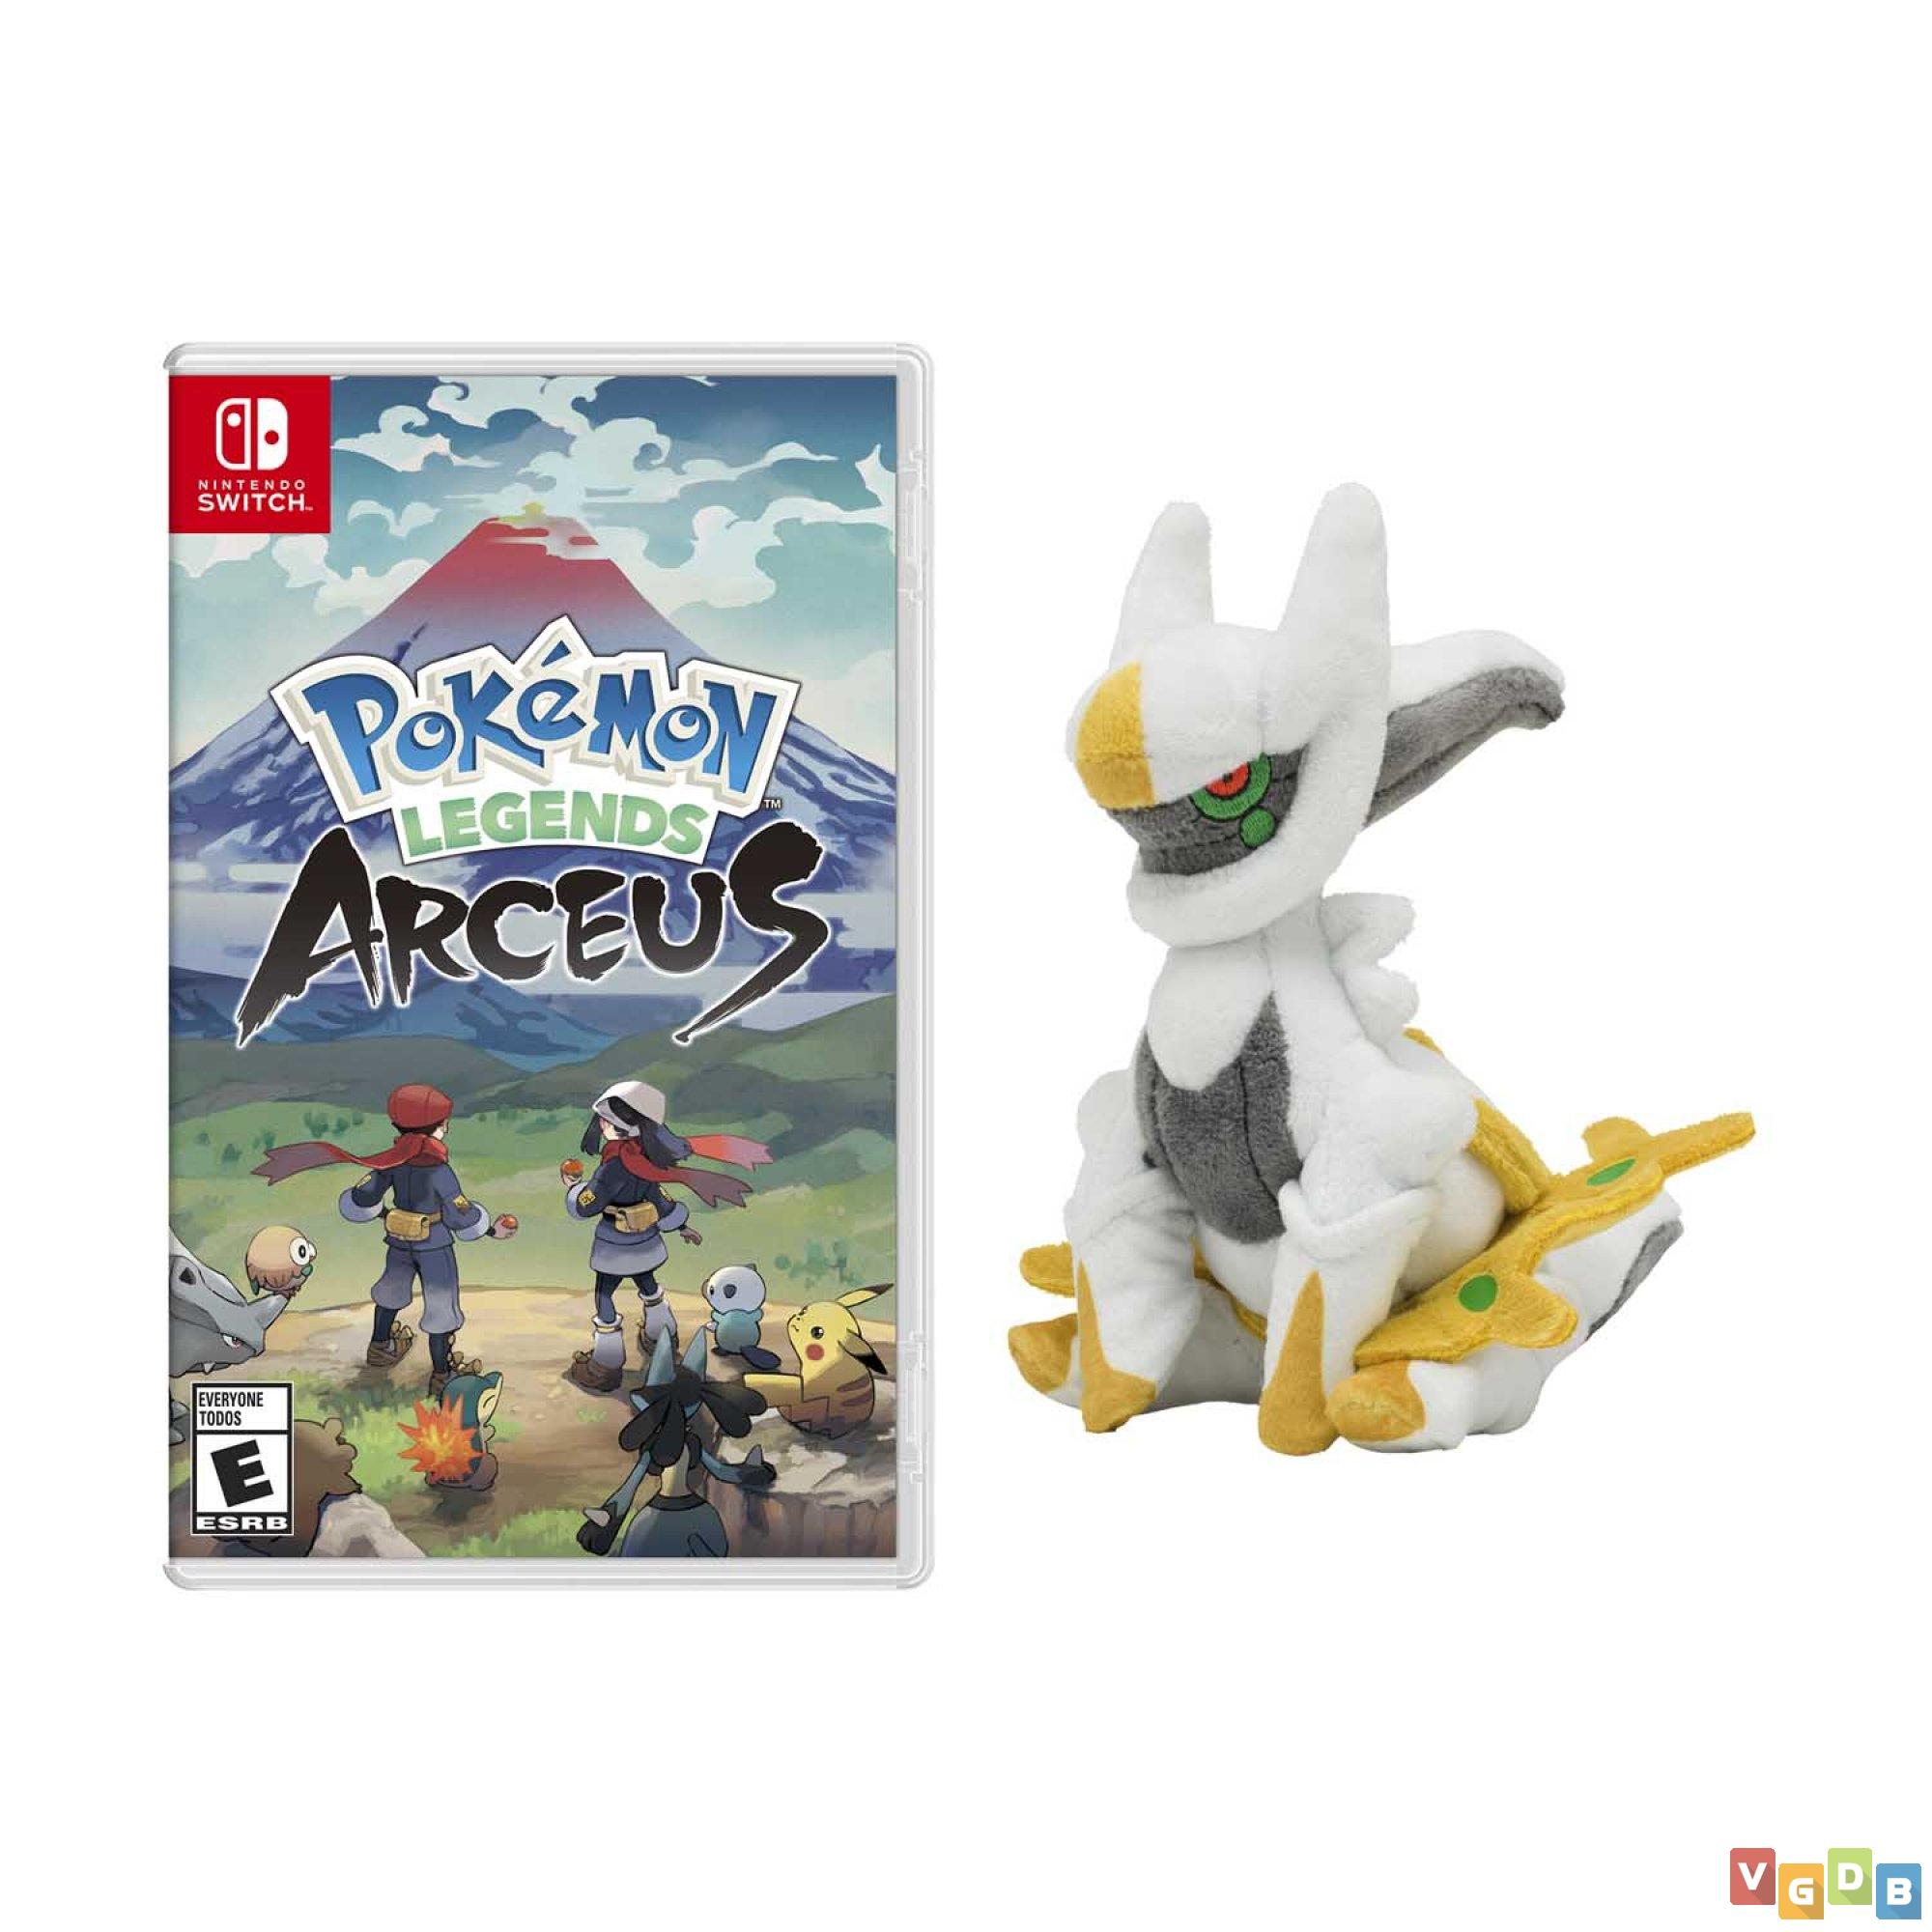 Pokémon Legends Arceus PT-BR GBA – Mundo do Nando